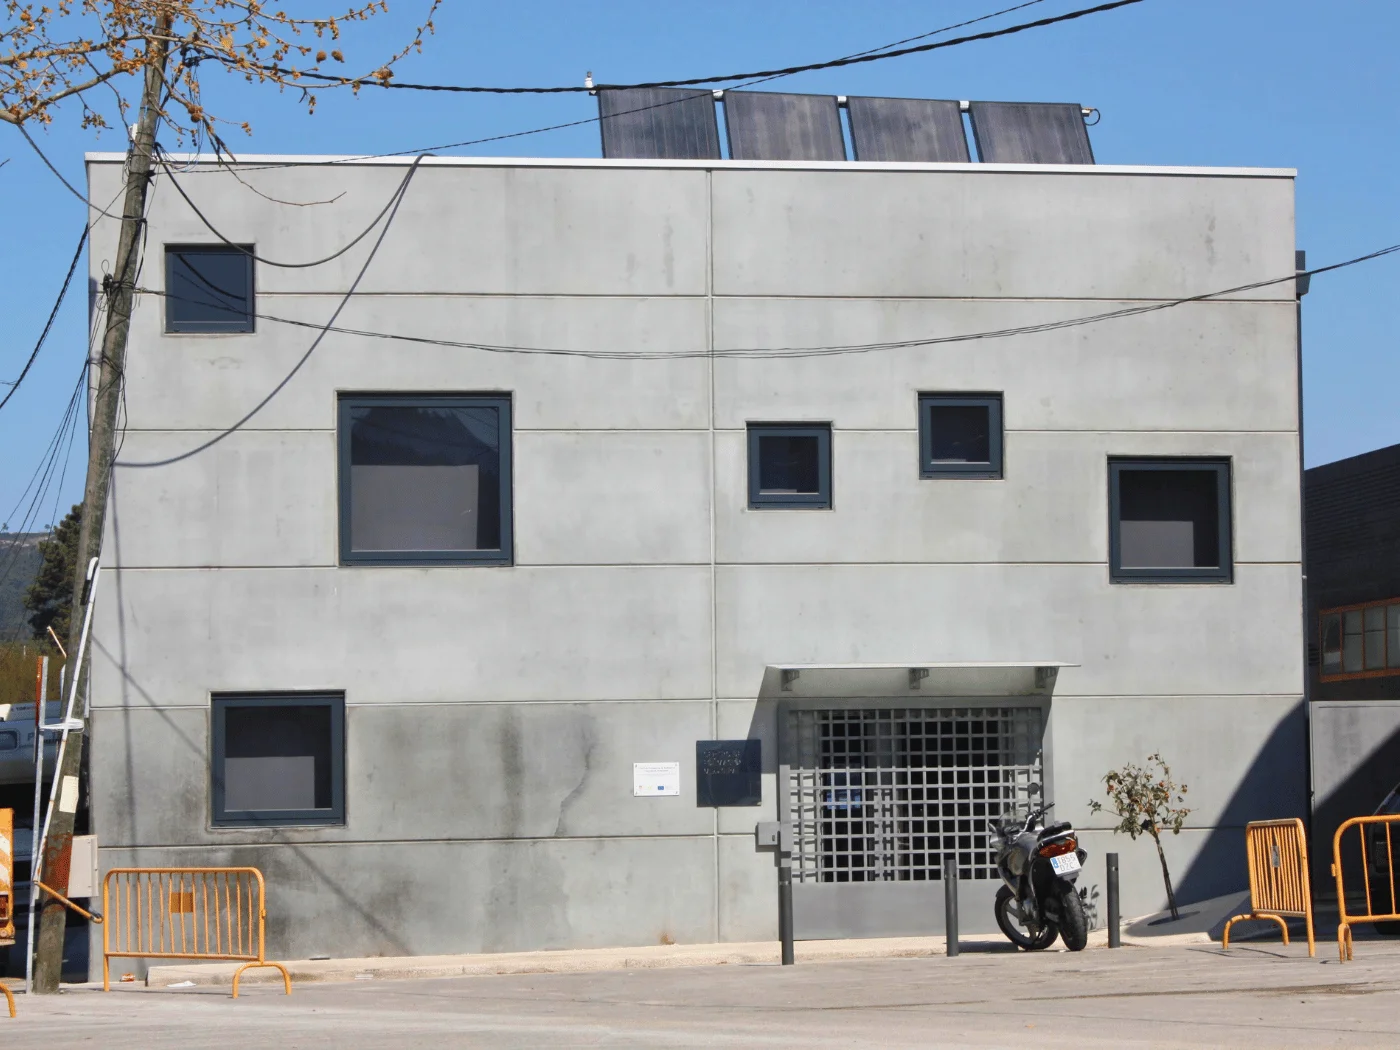 imagen destacada edificios publicos centro de formacion concello de redondela